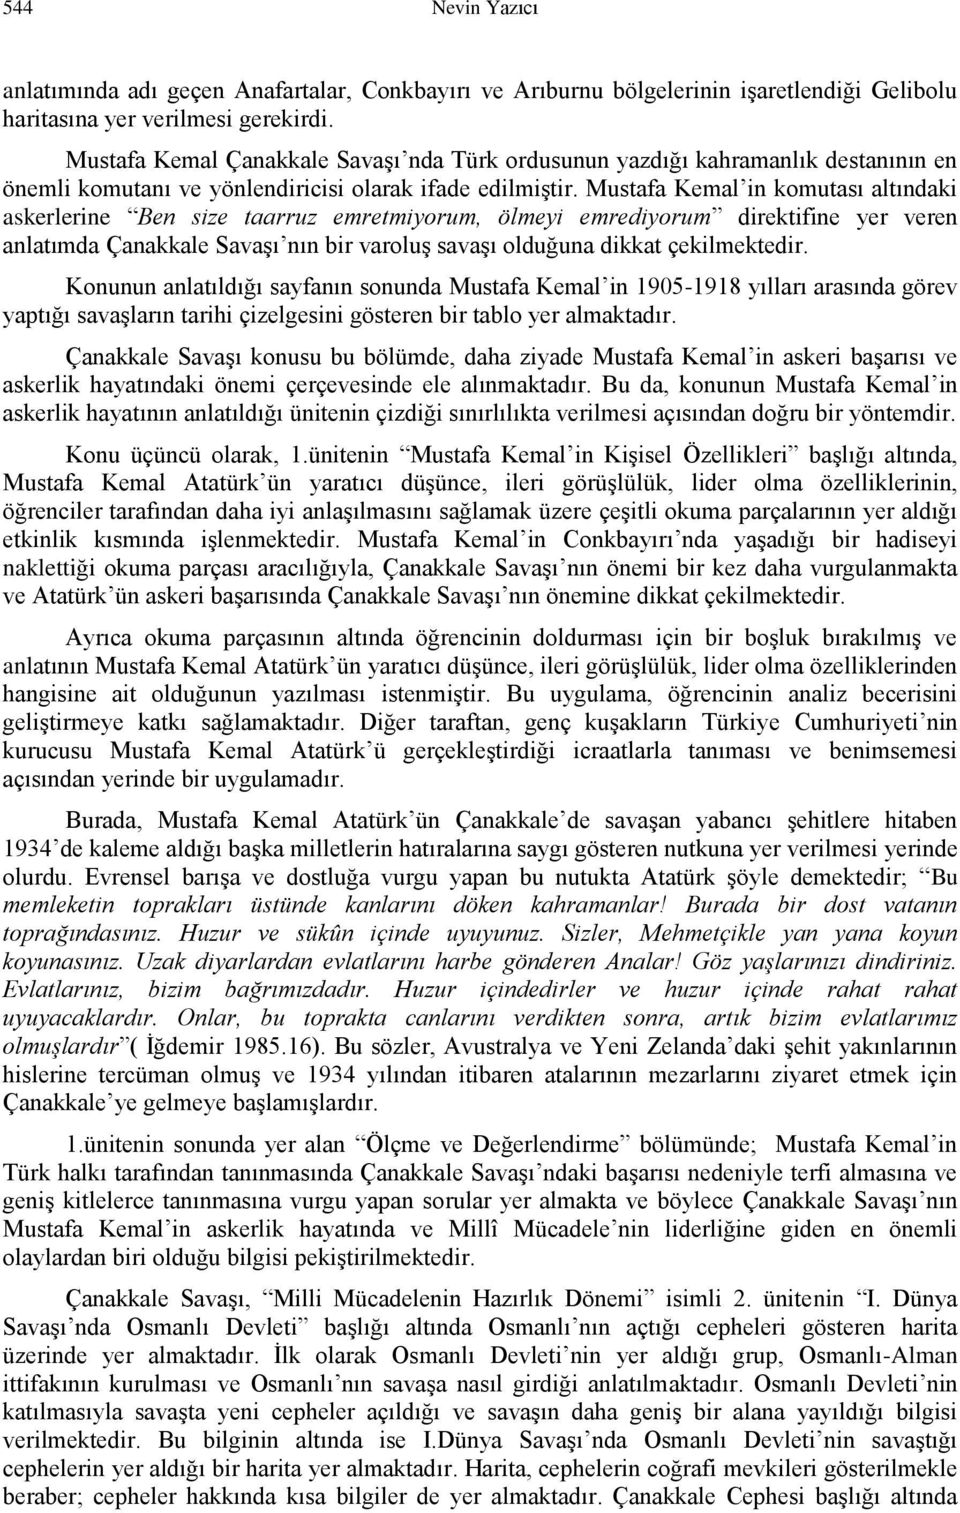 Mustafa Kemal in komutası altındaki askerlerine Ben size taarruz emretmiyorum, ölmeyi emrediyorum direktifine yer veren anlatımda Çanakkale Savaşı nın bir varoluş savaşı olduğuna dikkat çekilmektedir.